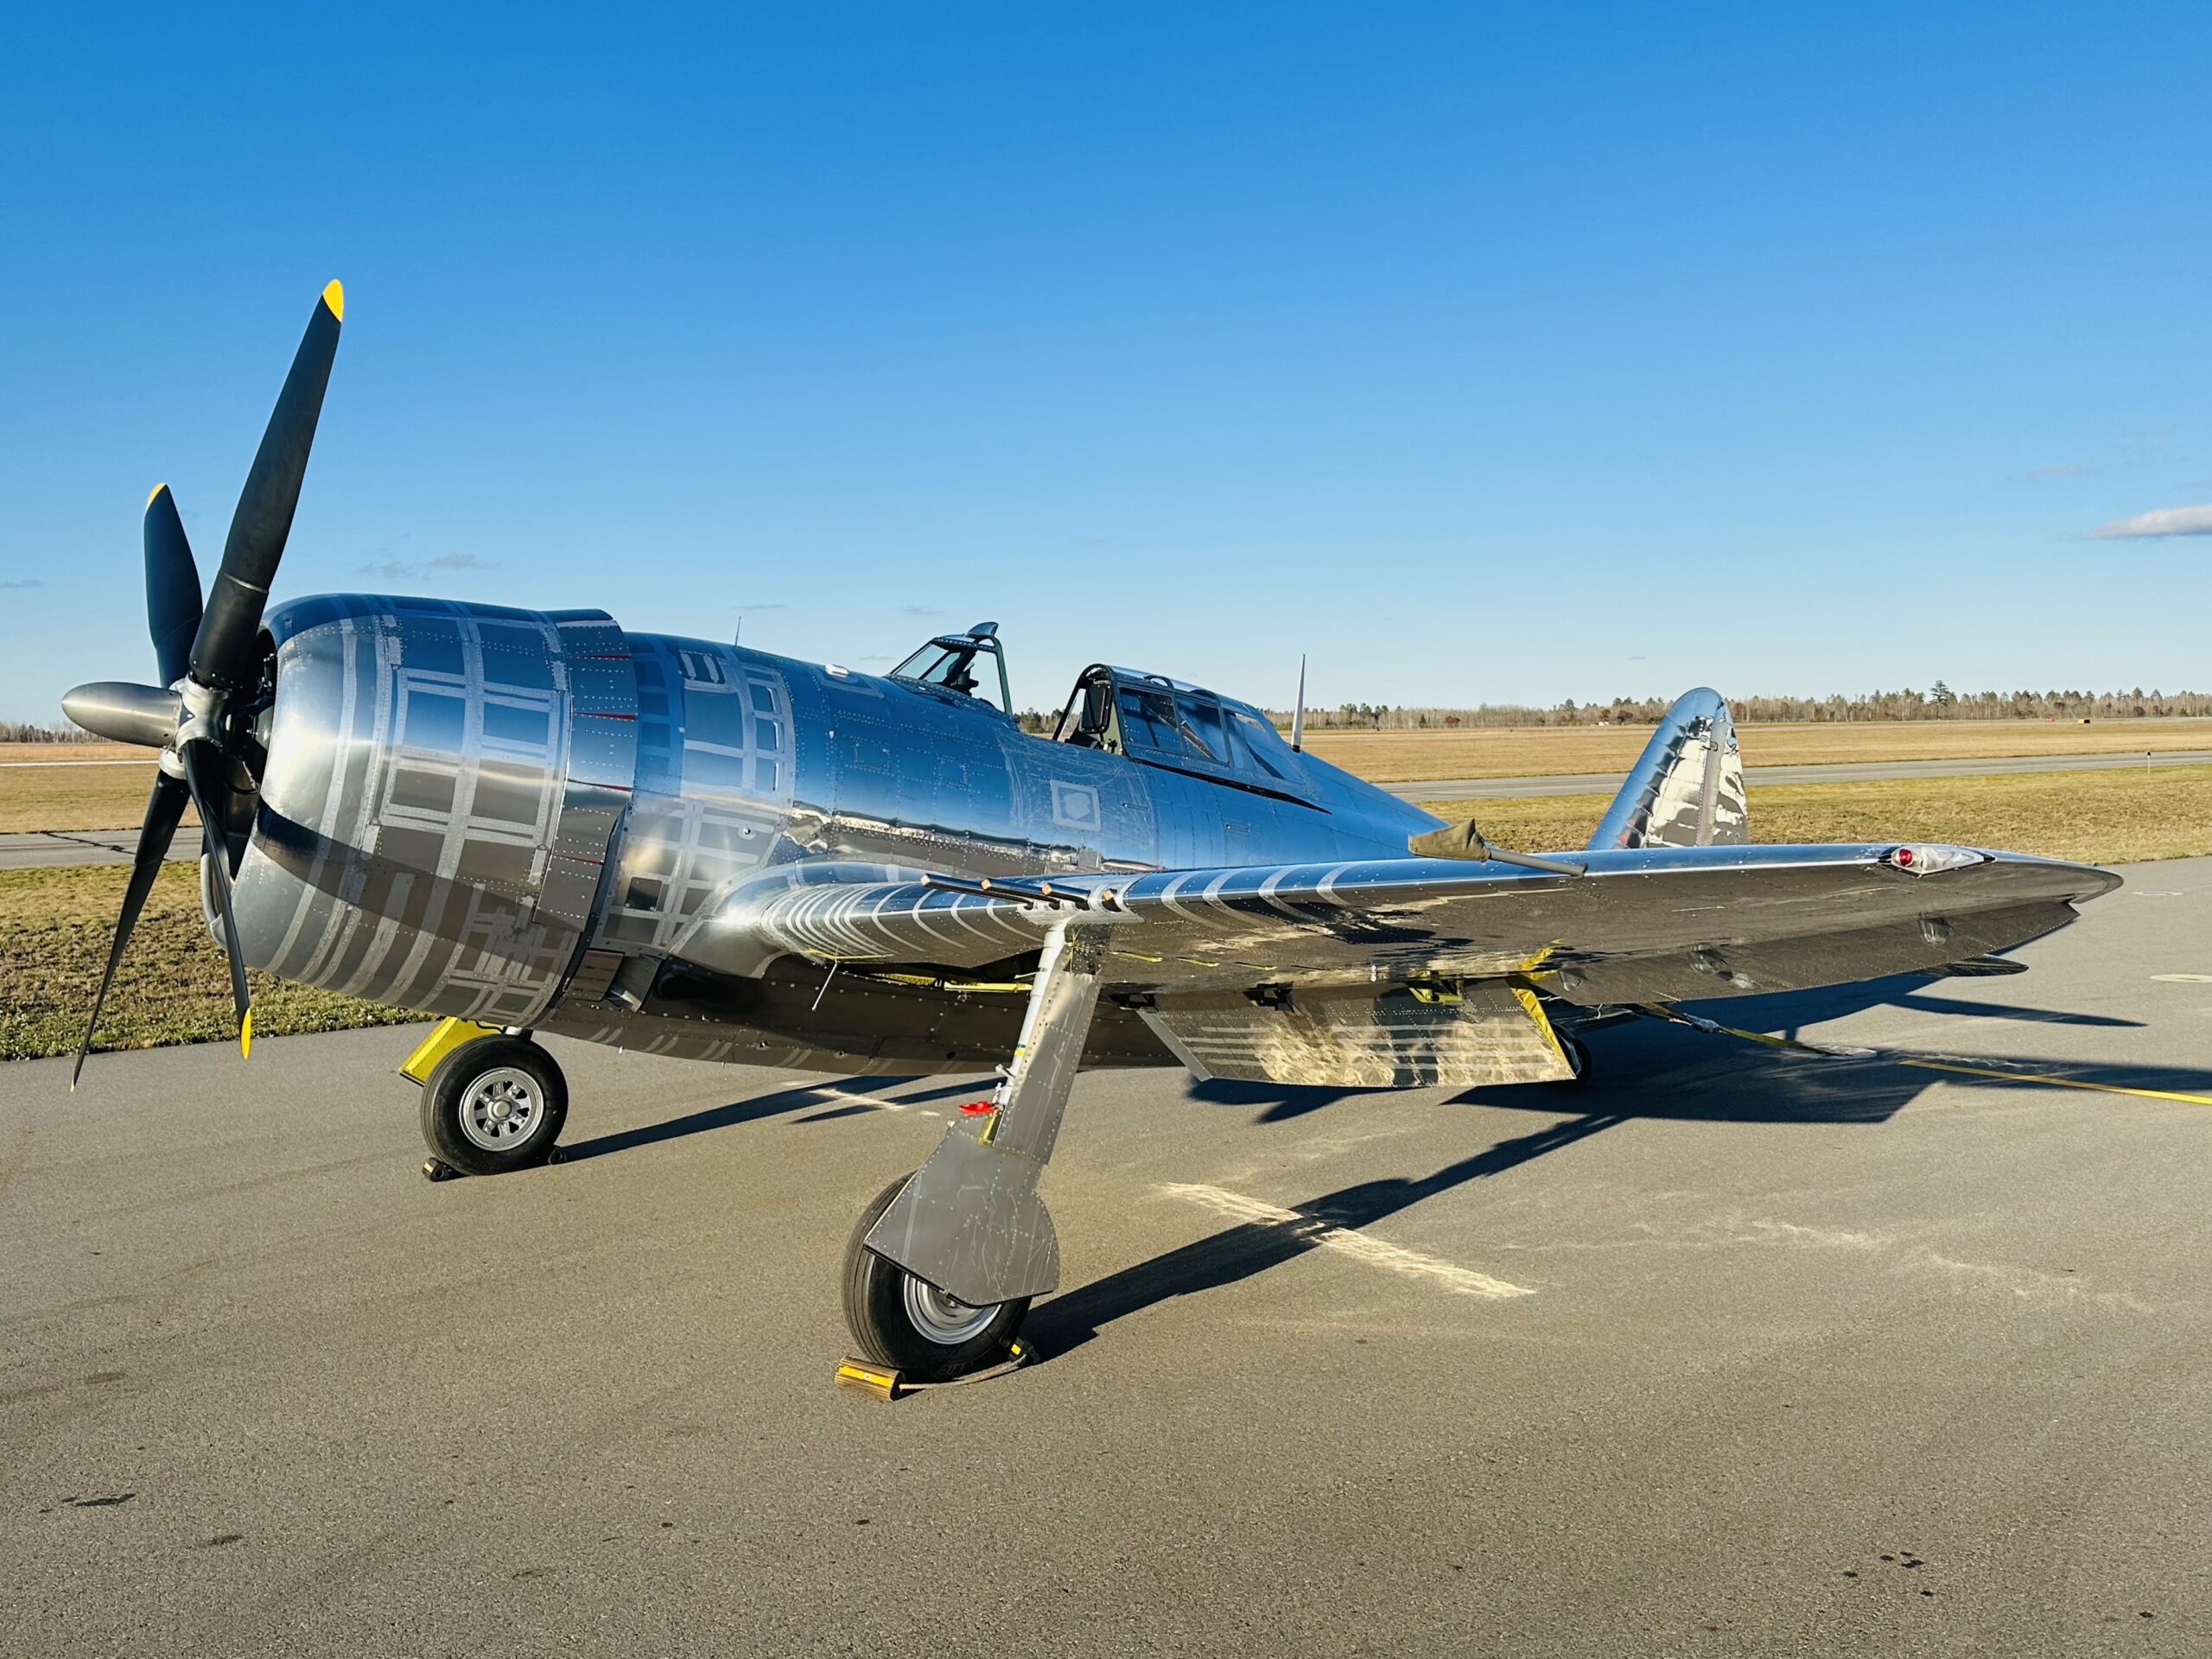 P-47 Thunderbolt after restoration